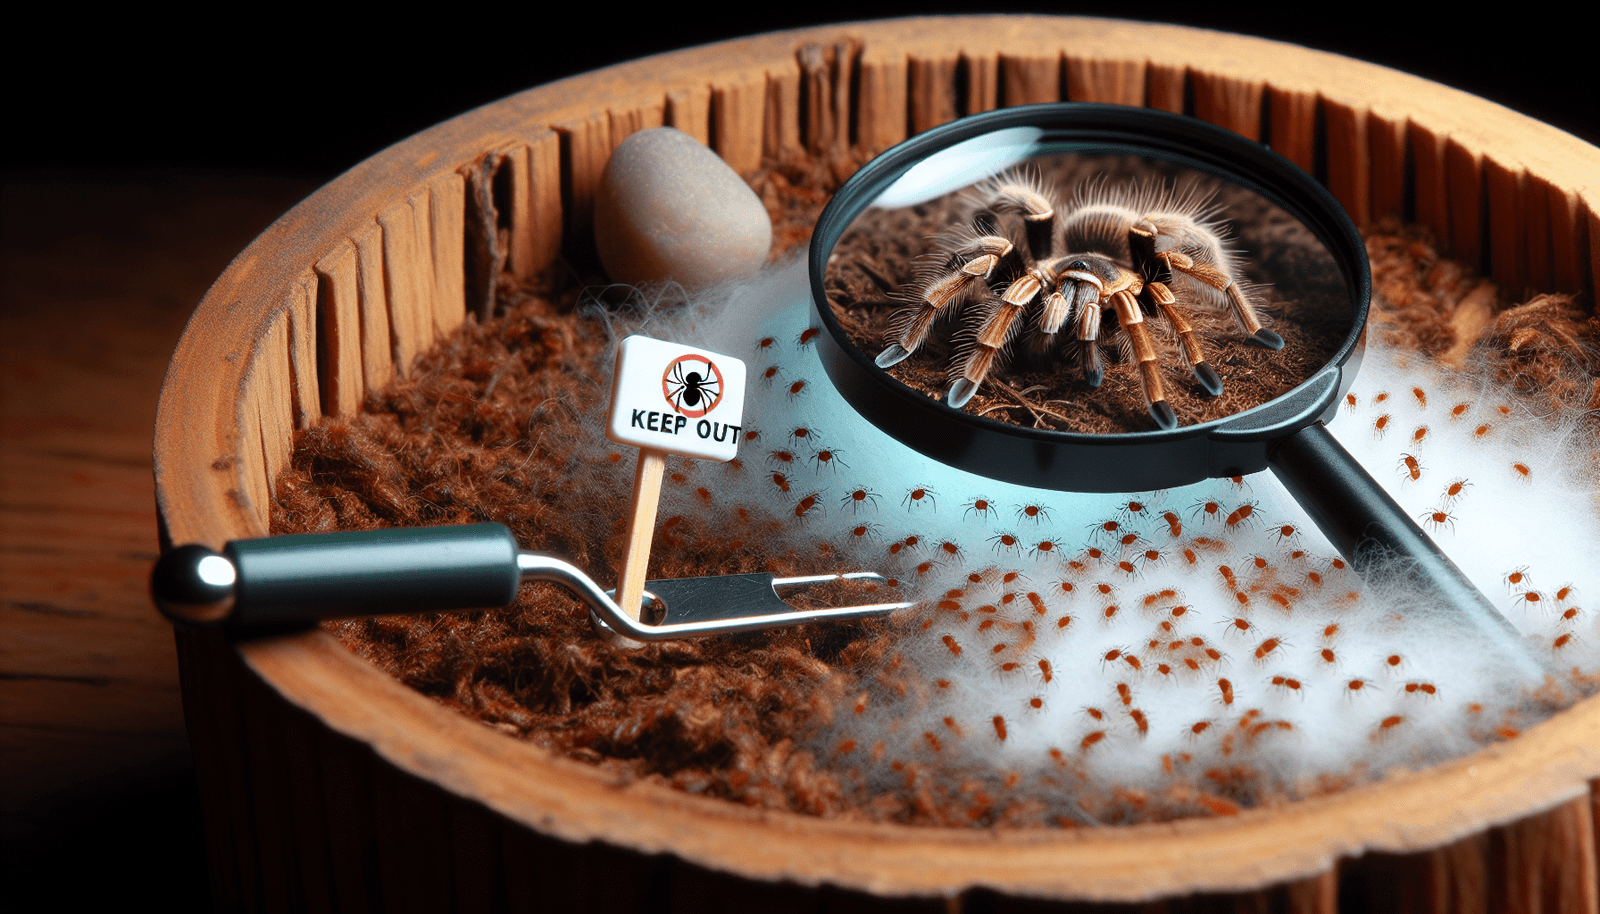 How Do I Prevent And Treat Mites In A Tarantula Enclosure?